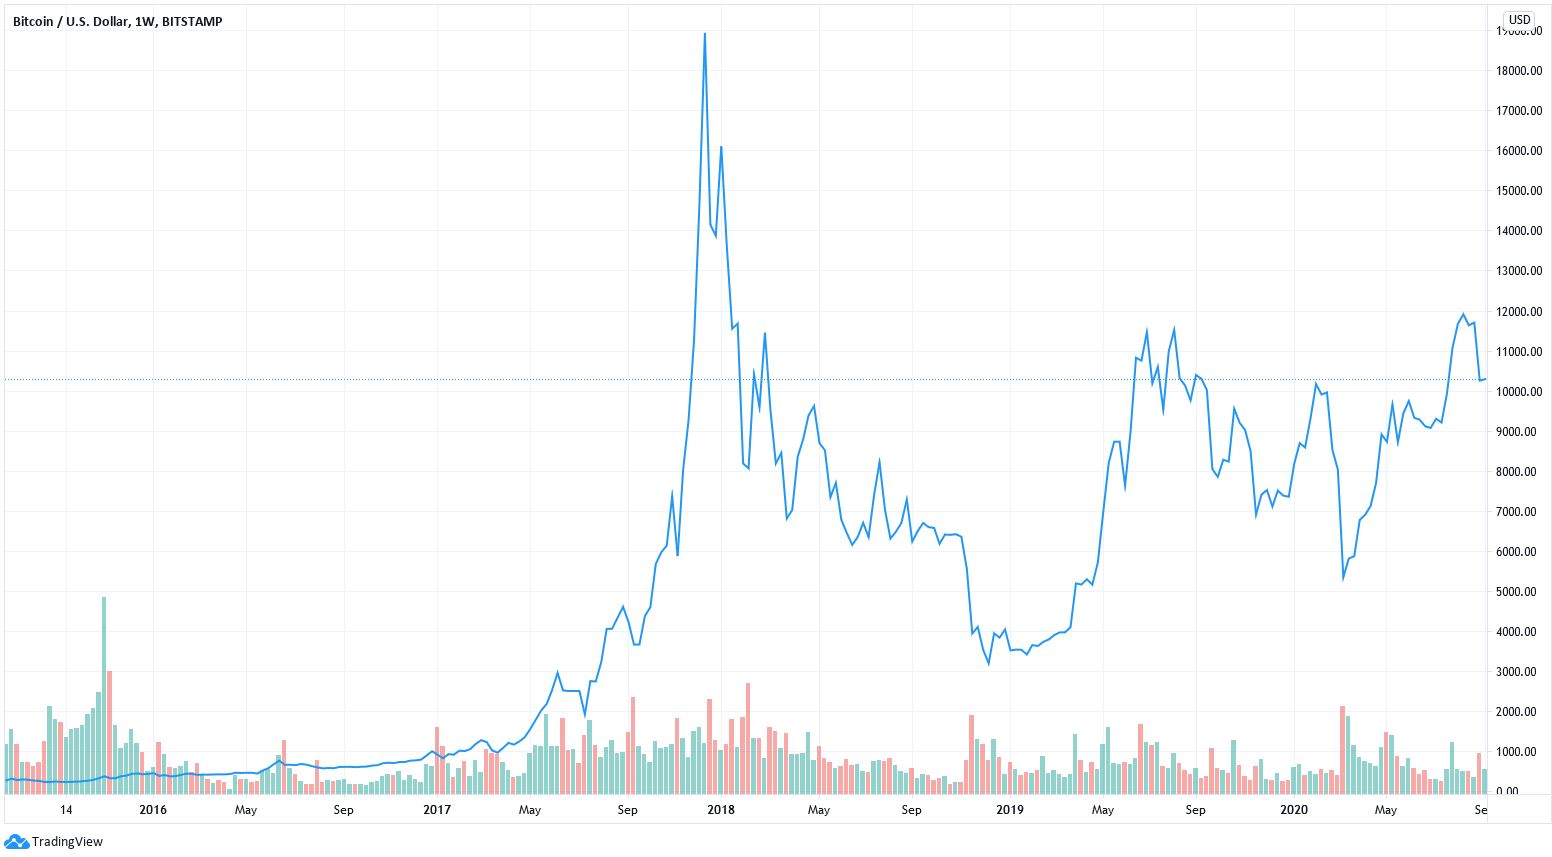 5 year bitcoin graph